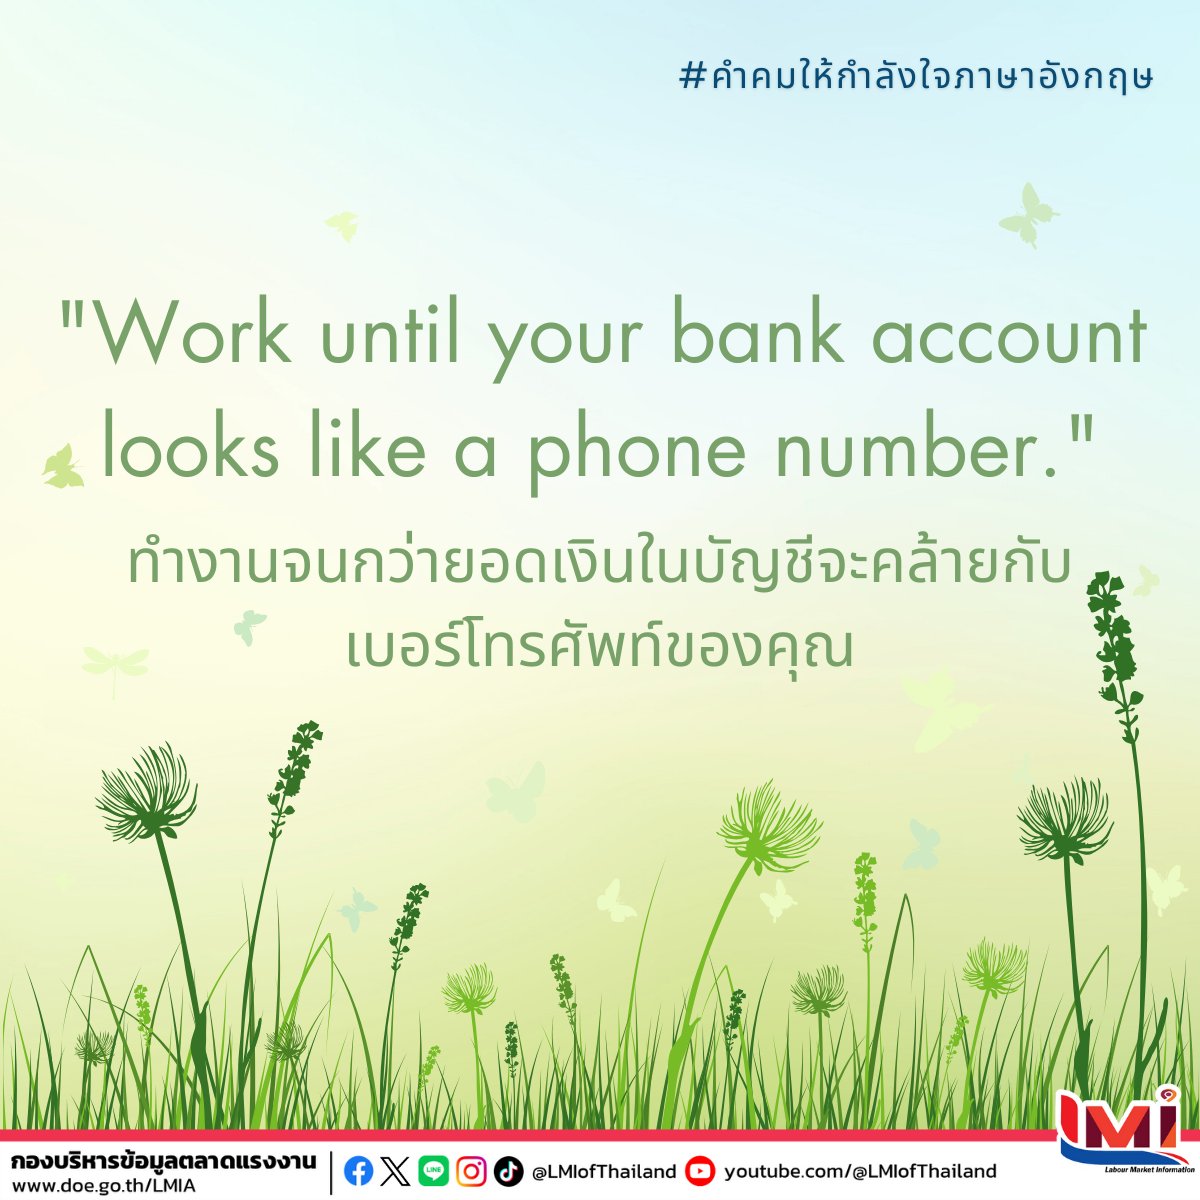 📋 คำคมให้กำลังใจภาษาอังกฤษ (Encouraging Quotes) ประจำวันนี้  ☀ Work until your bank account looks like a phone number. ทำงานจนกว่ายอดเงินในบัญชีจะคล้ายกับเบอร์โทรศัพท์ของคุณ #คำศัพท์แรงงานวันละคำ #คำศัพท์แรงงานวันนี้  #คำคมภาษาอังกฤษ #แคปชั่นภาษาอังกฤษ  #LMIofThailand